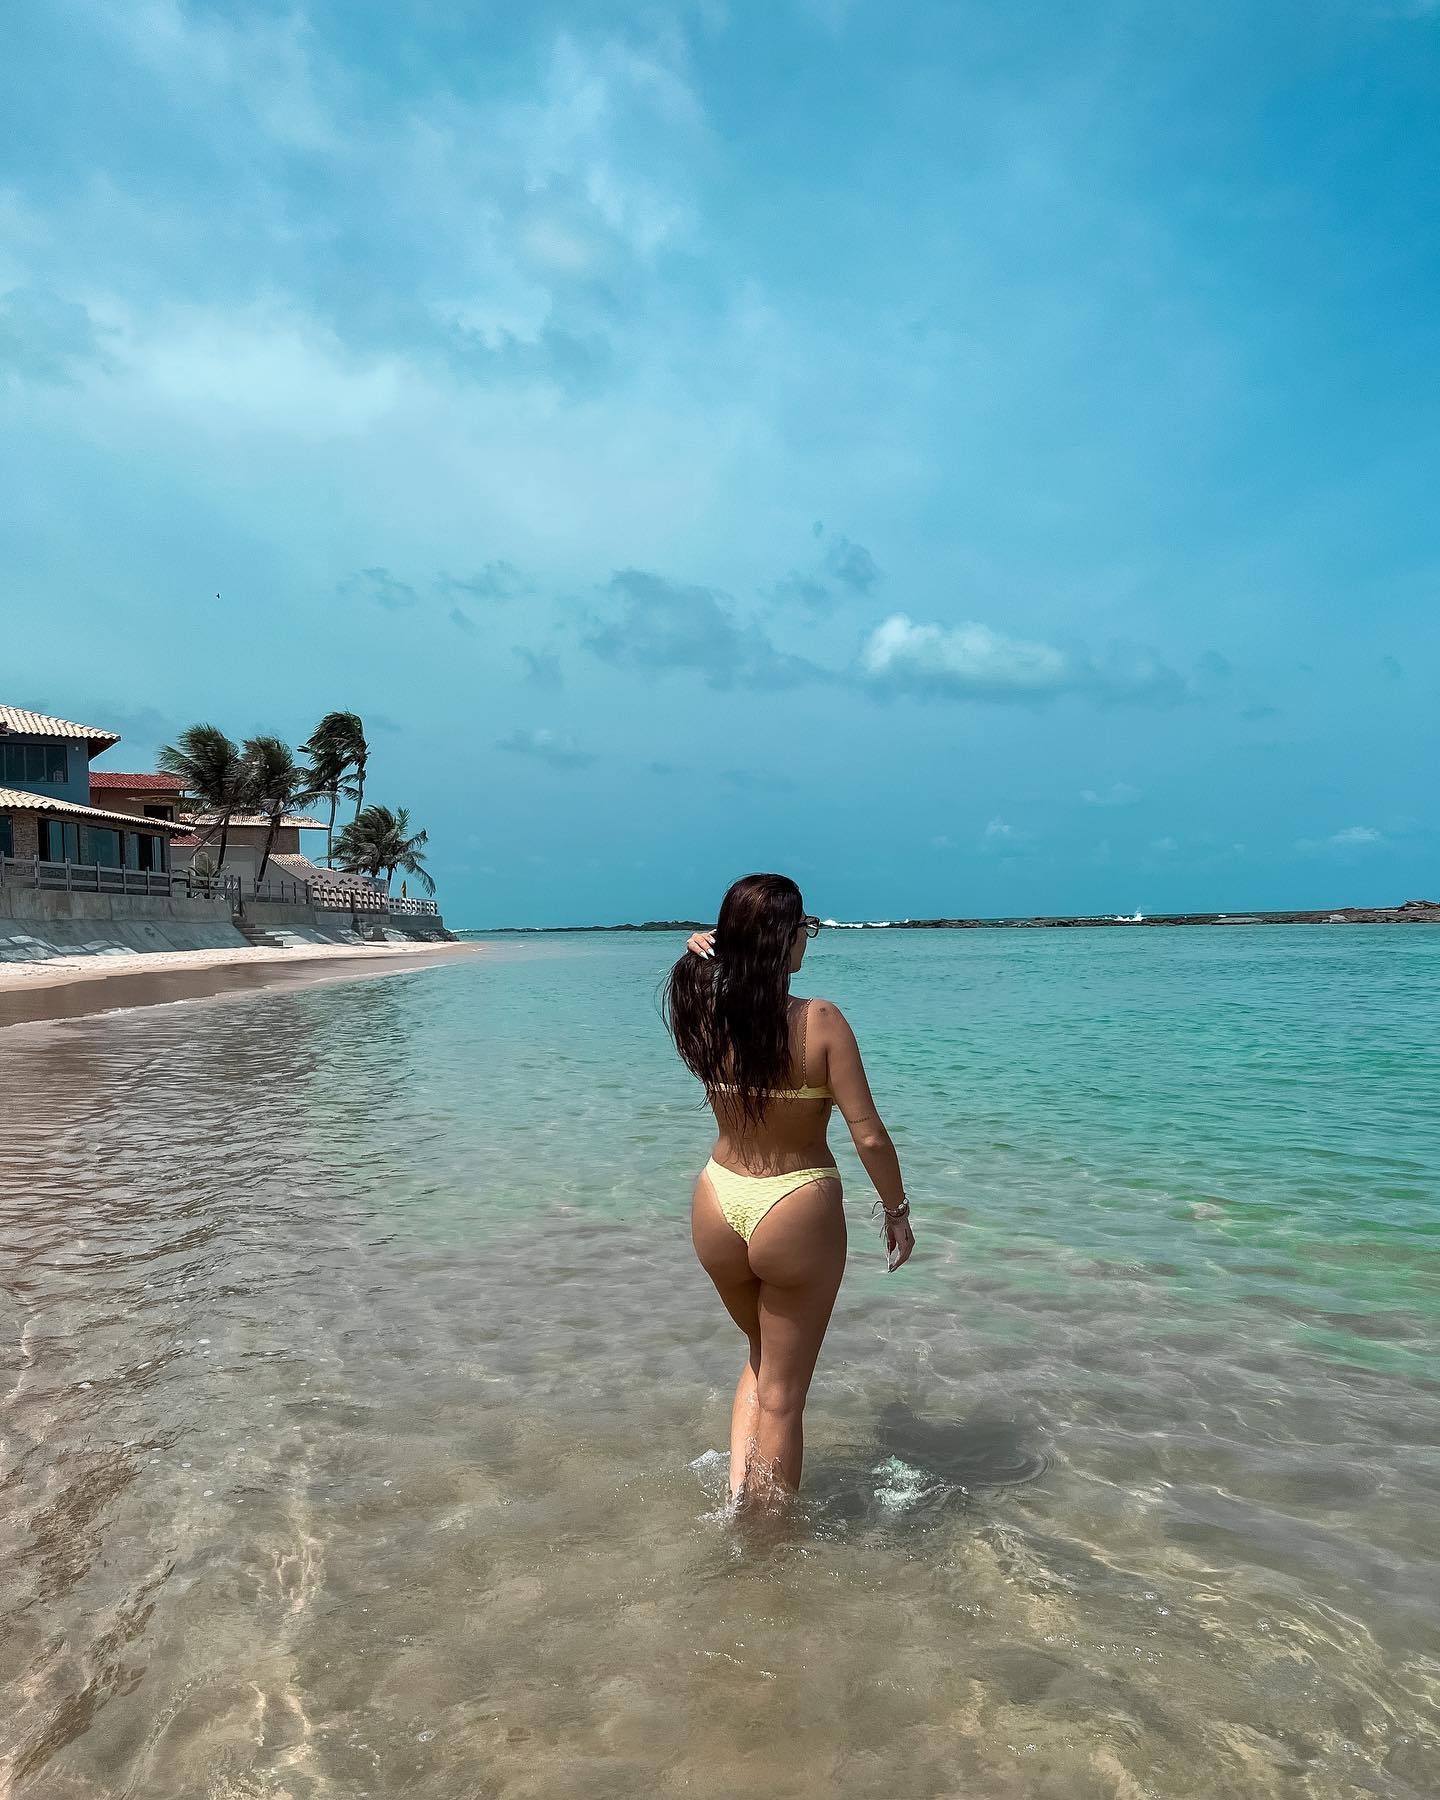 Jéssica Beatriz posa em cenário paradisíaco em praia do nordeste (Foto: reprodução/instagram)